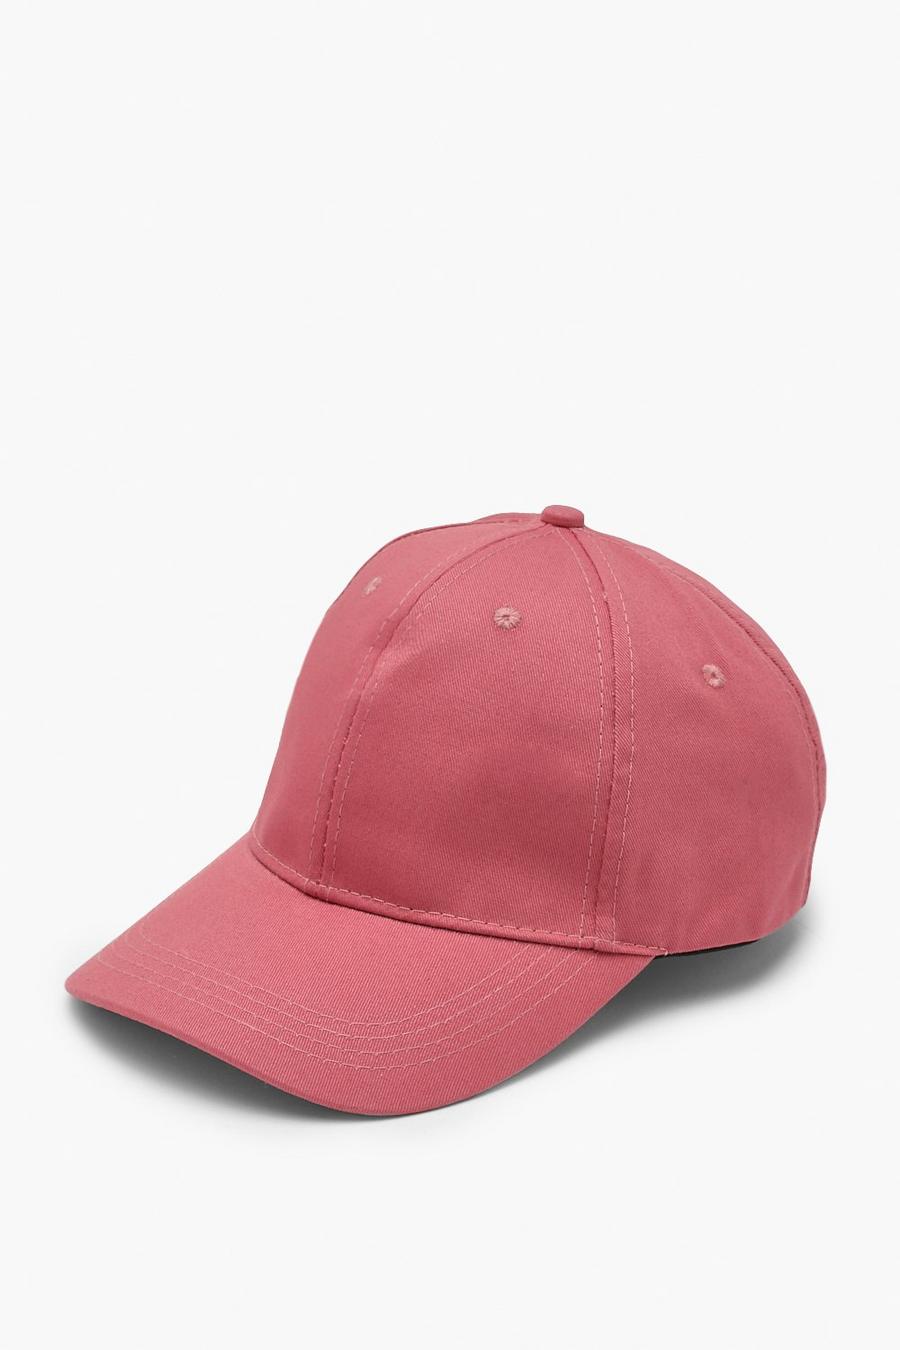 ורוד ורד rosa כובע מצחייה בייסבול ארוג בצבע ורוד אפור 